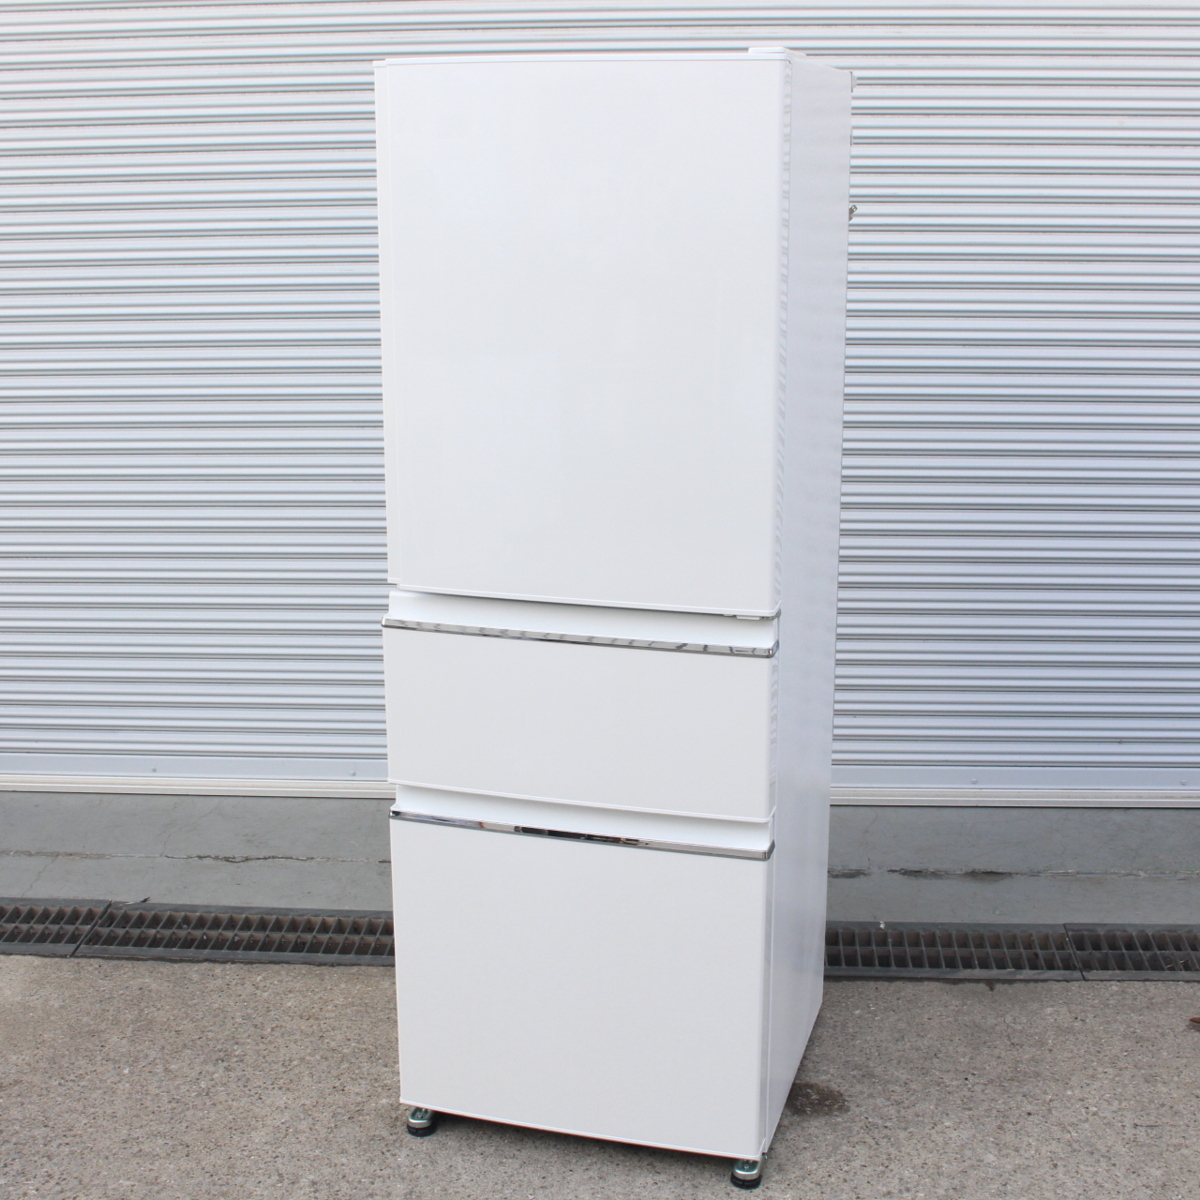 東京都調布市にて 三菱 3ドア冷蔵庫 MR-CX33D 2019年製 を出張買取させて頂きました。